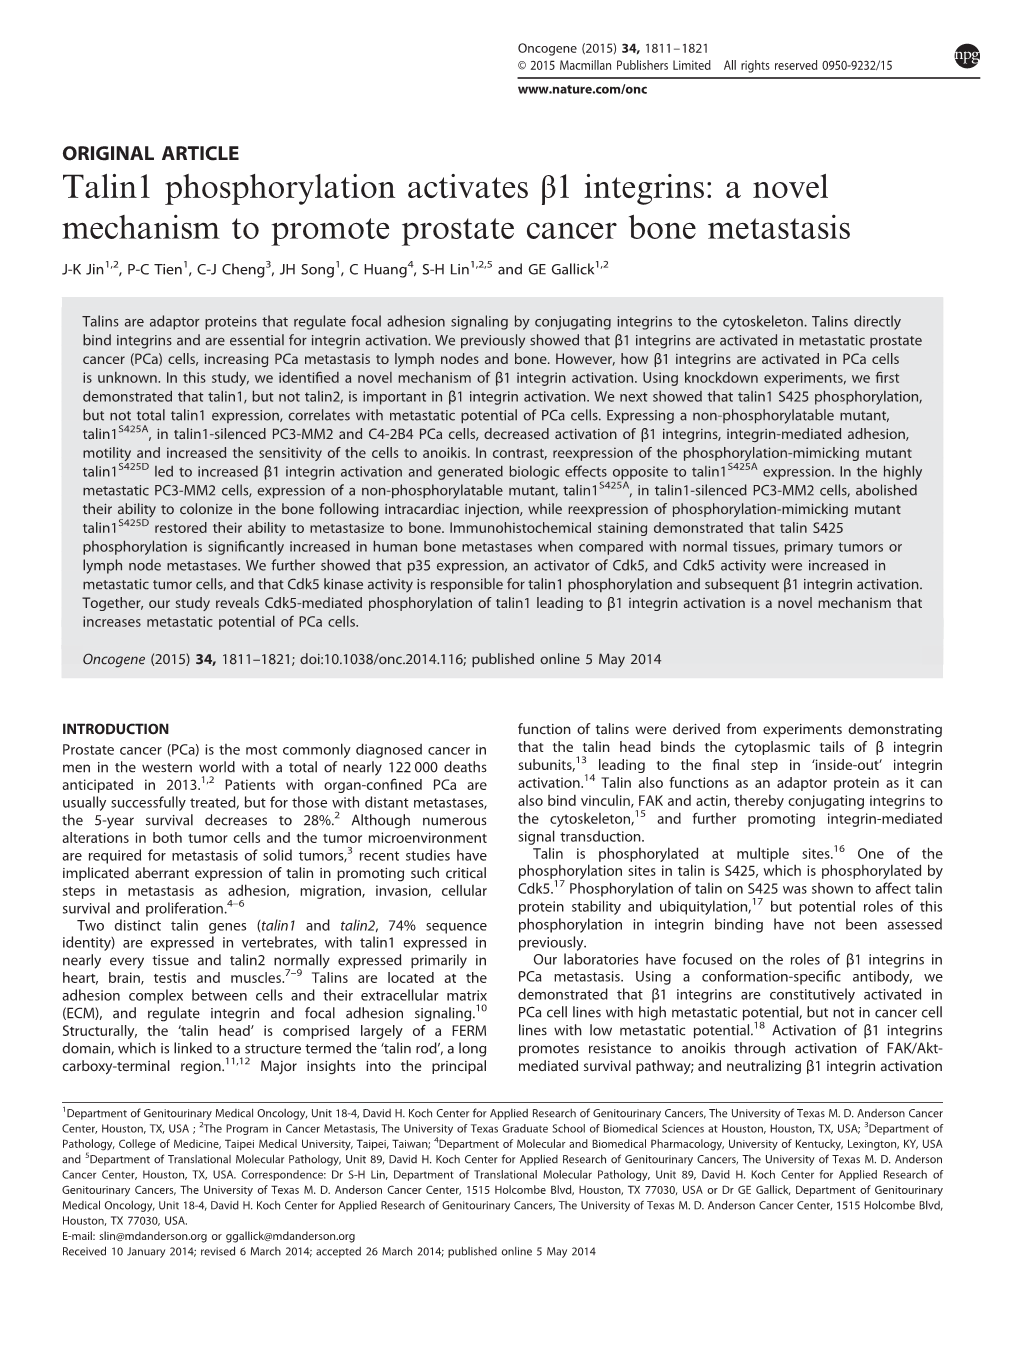 Talin1 Phosphorylation Activates Β1 Integrins: a Novel Mechanism to Promote Prostate Cancer Bone Metastasis